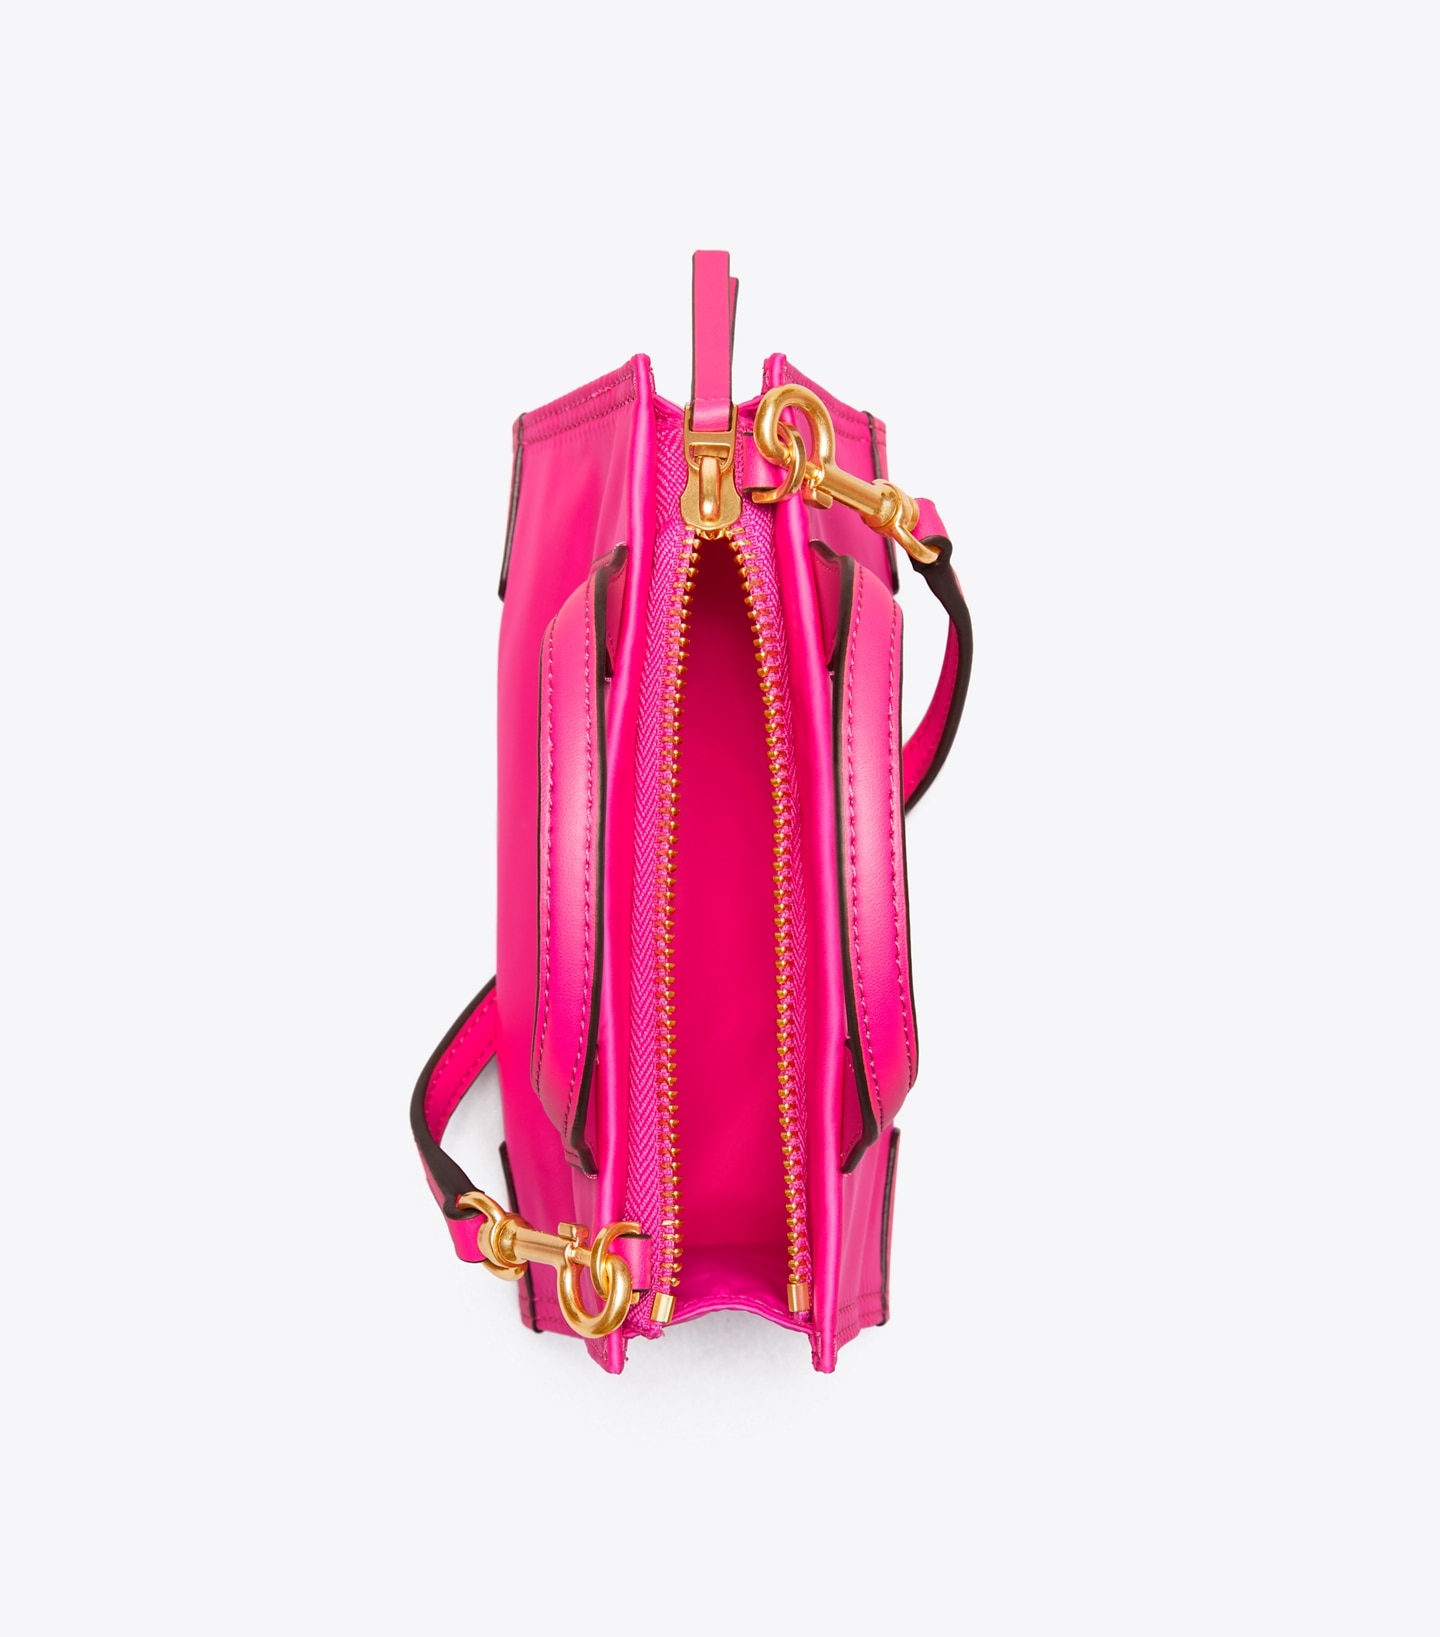 Tory Burch Ella Micro Tote Bag in Pink